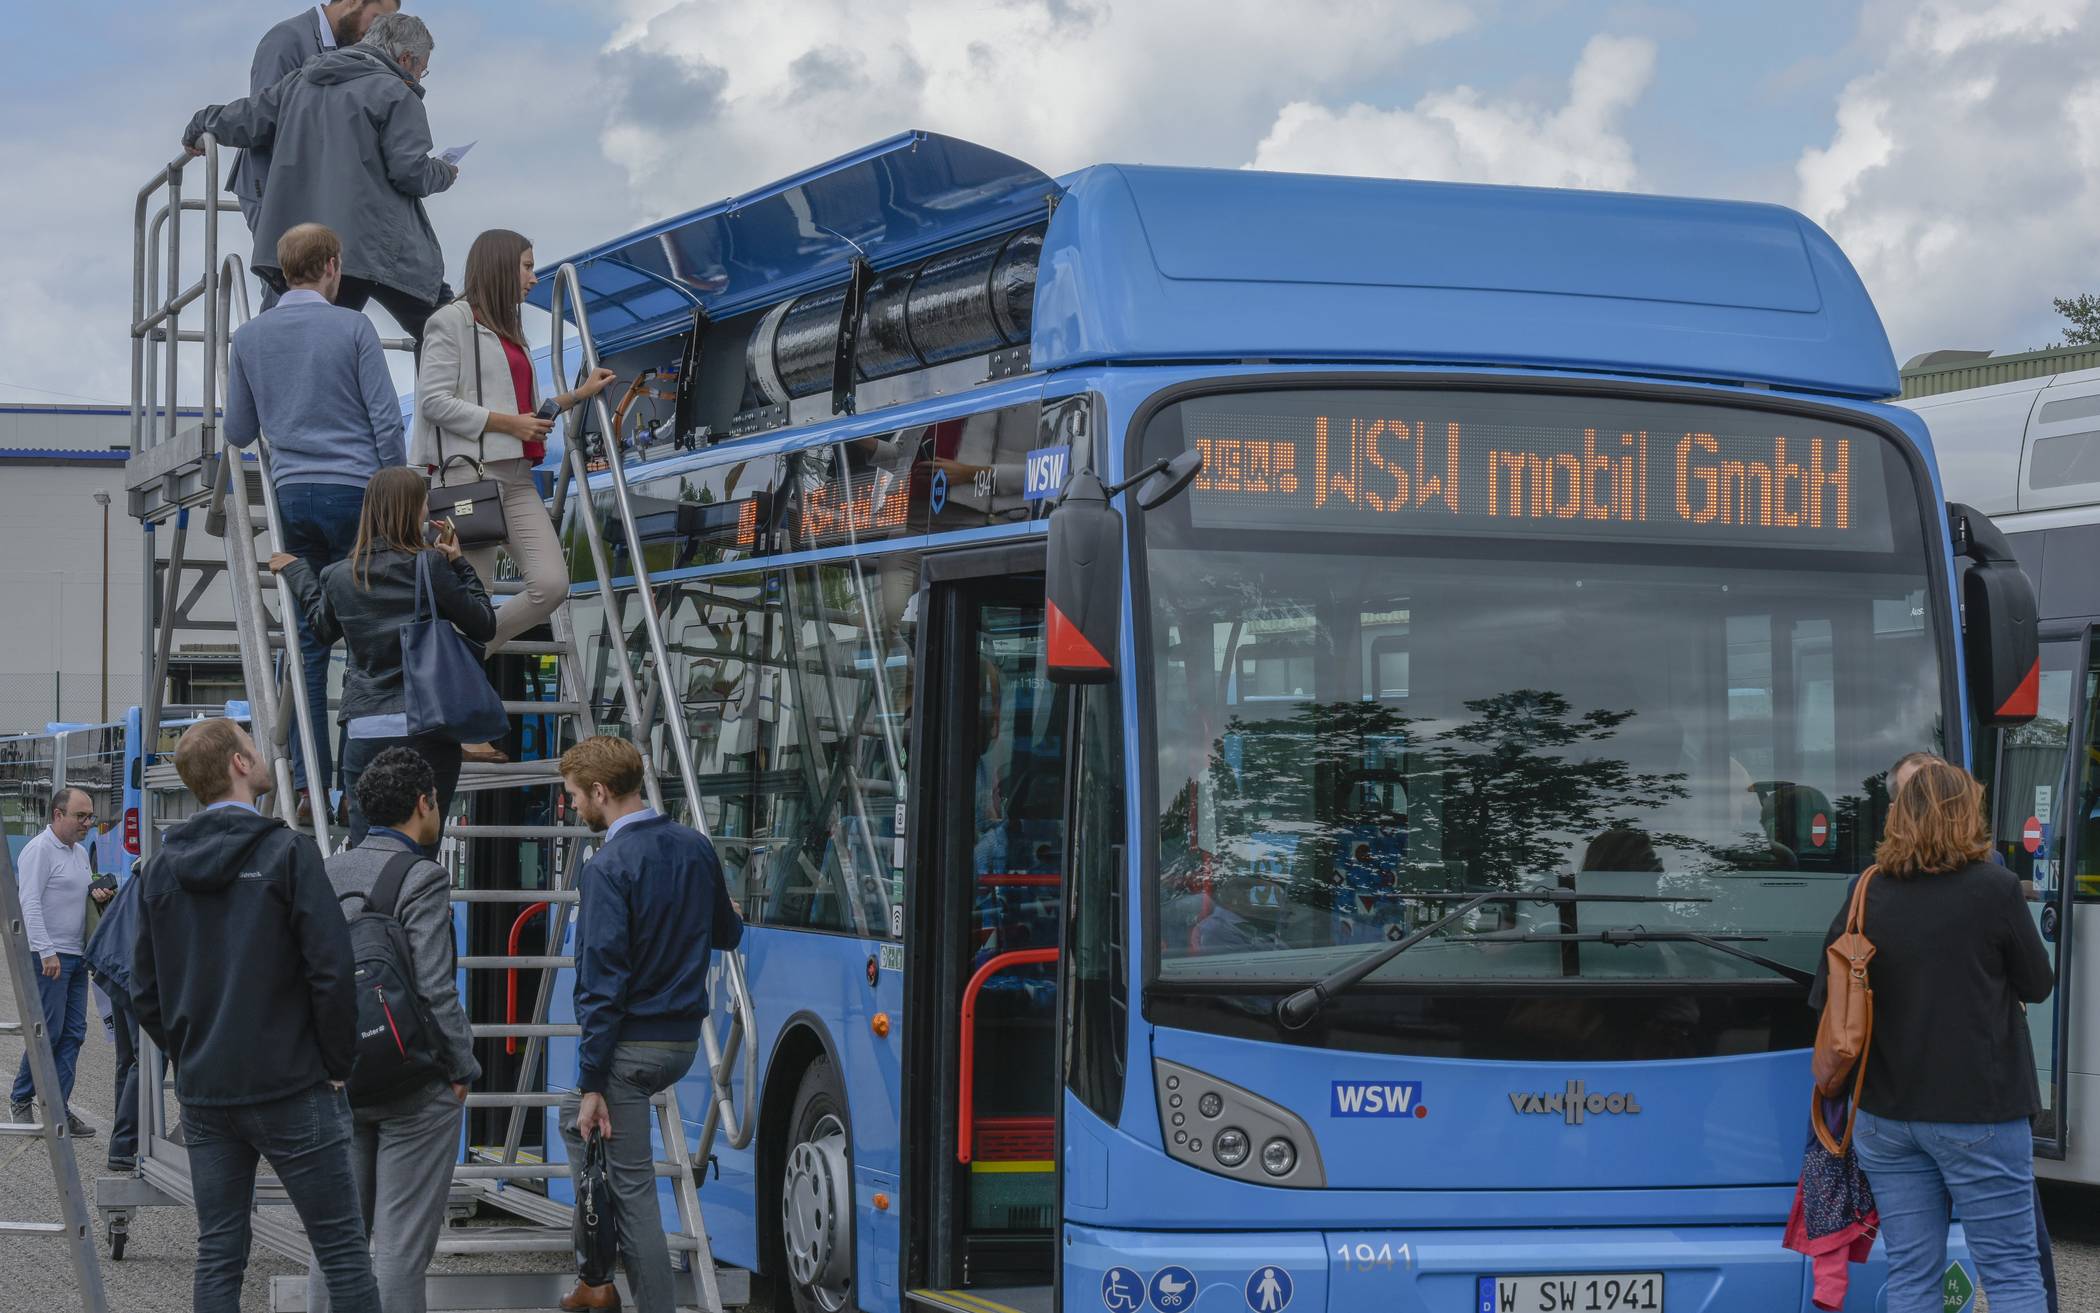  Bei einem Treffen von durch die EU geförderten Projektträgern in Wuppertal konnten die WSW bereits einen Brennstoffzellenbus präsentieren. 